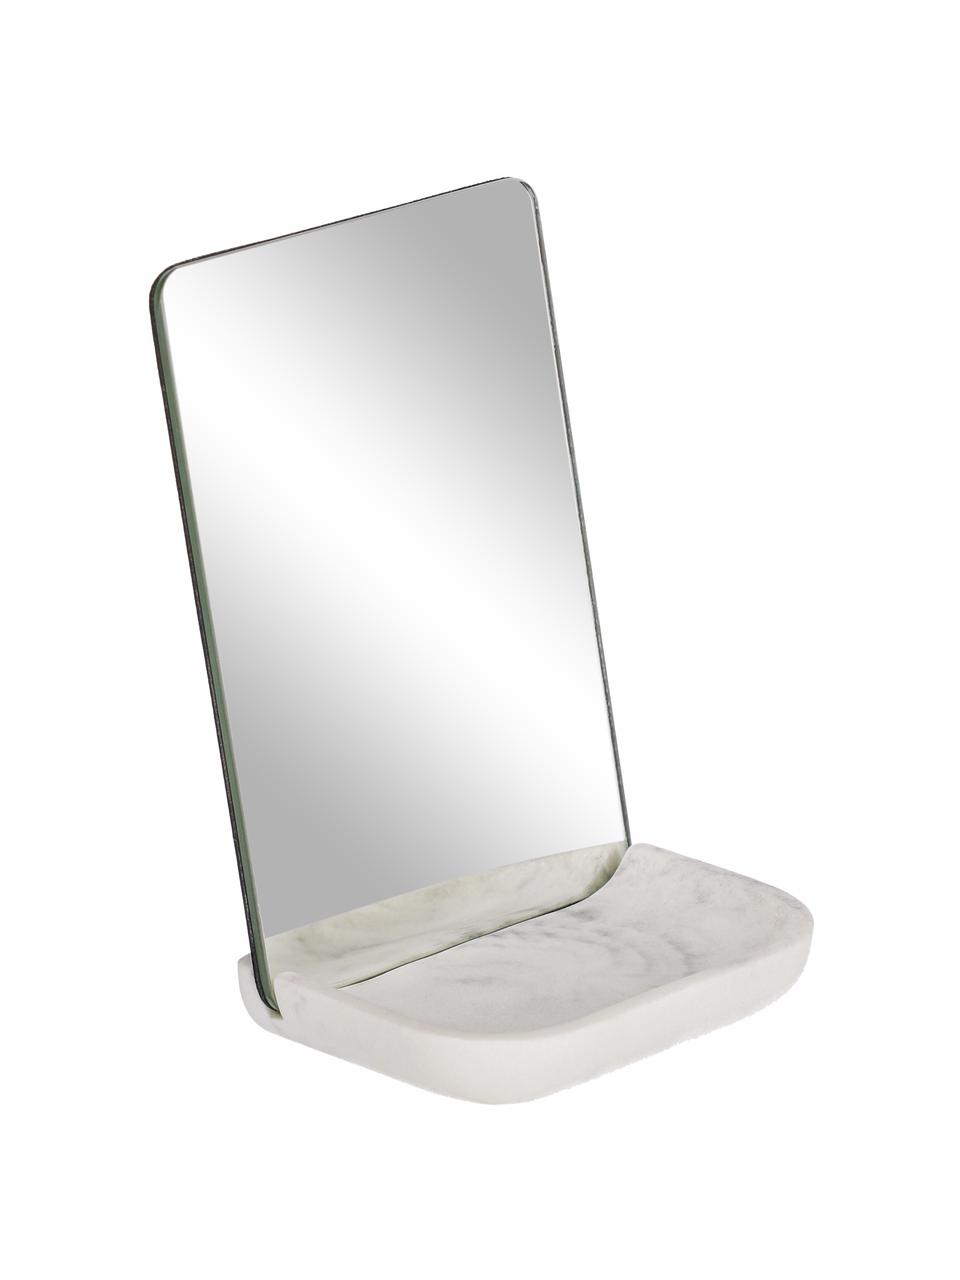 Make-up spiegel Sharif met plank met marmerlook, Plank: kunststof, Wit, grijs, B 12 cm x H 18 cm